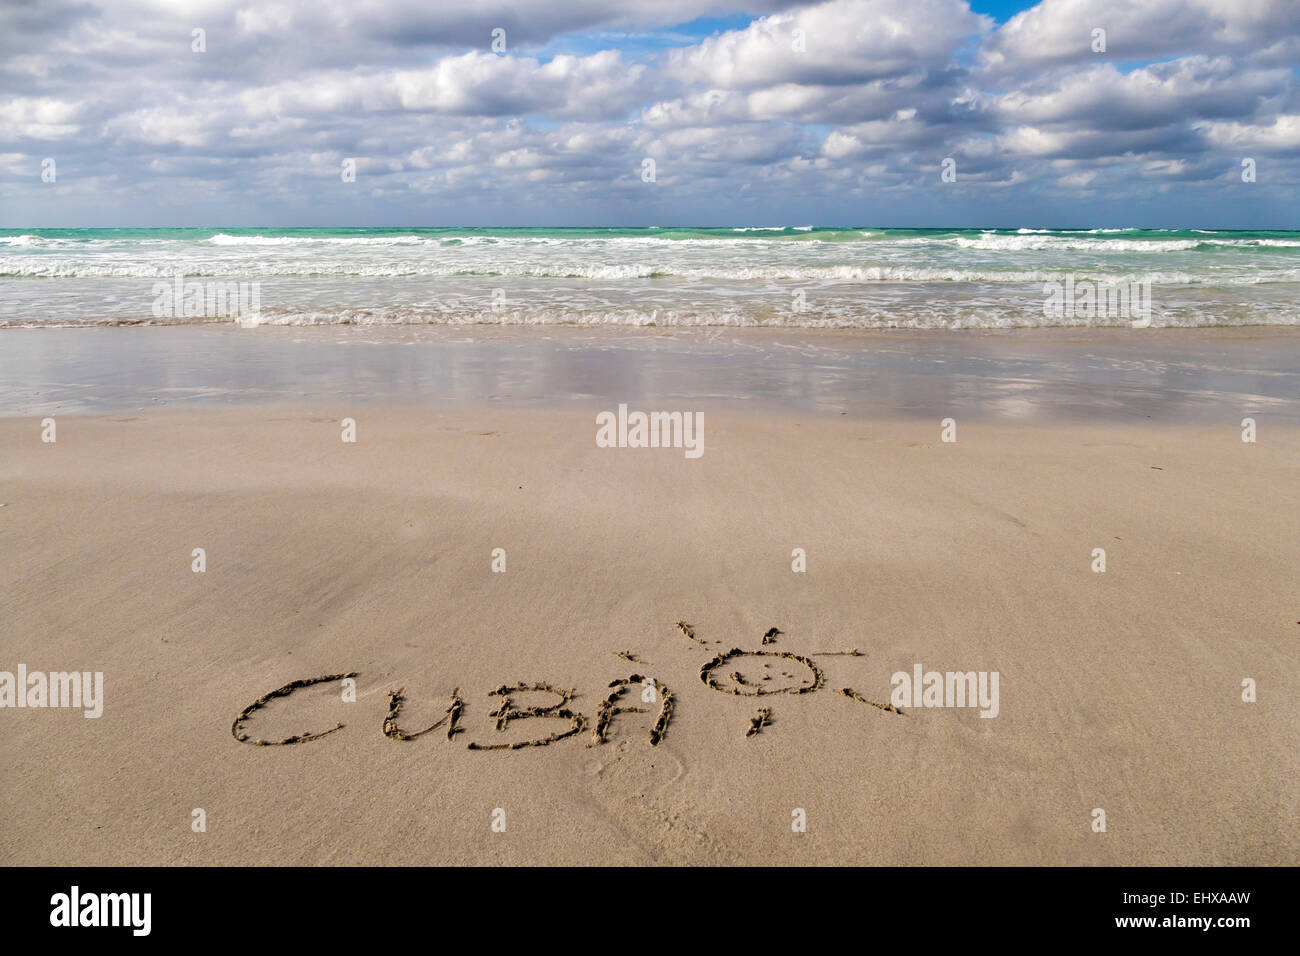 Cuba, Varadero, la palabra "Cuba" tallado en la arena mojada Foto de stock